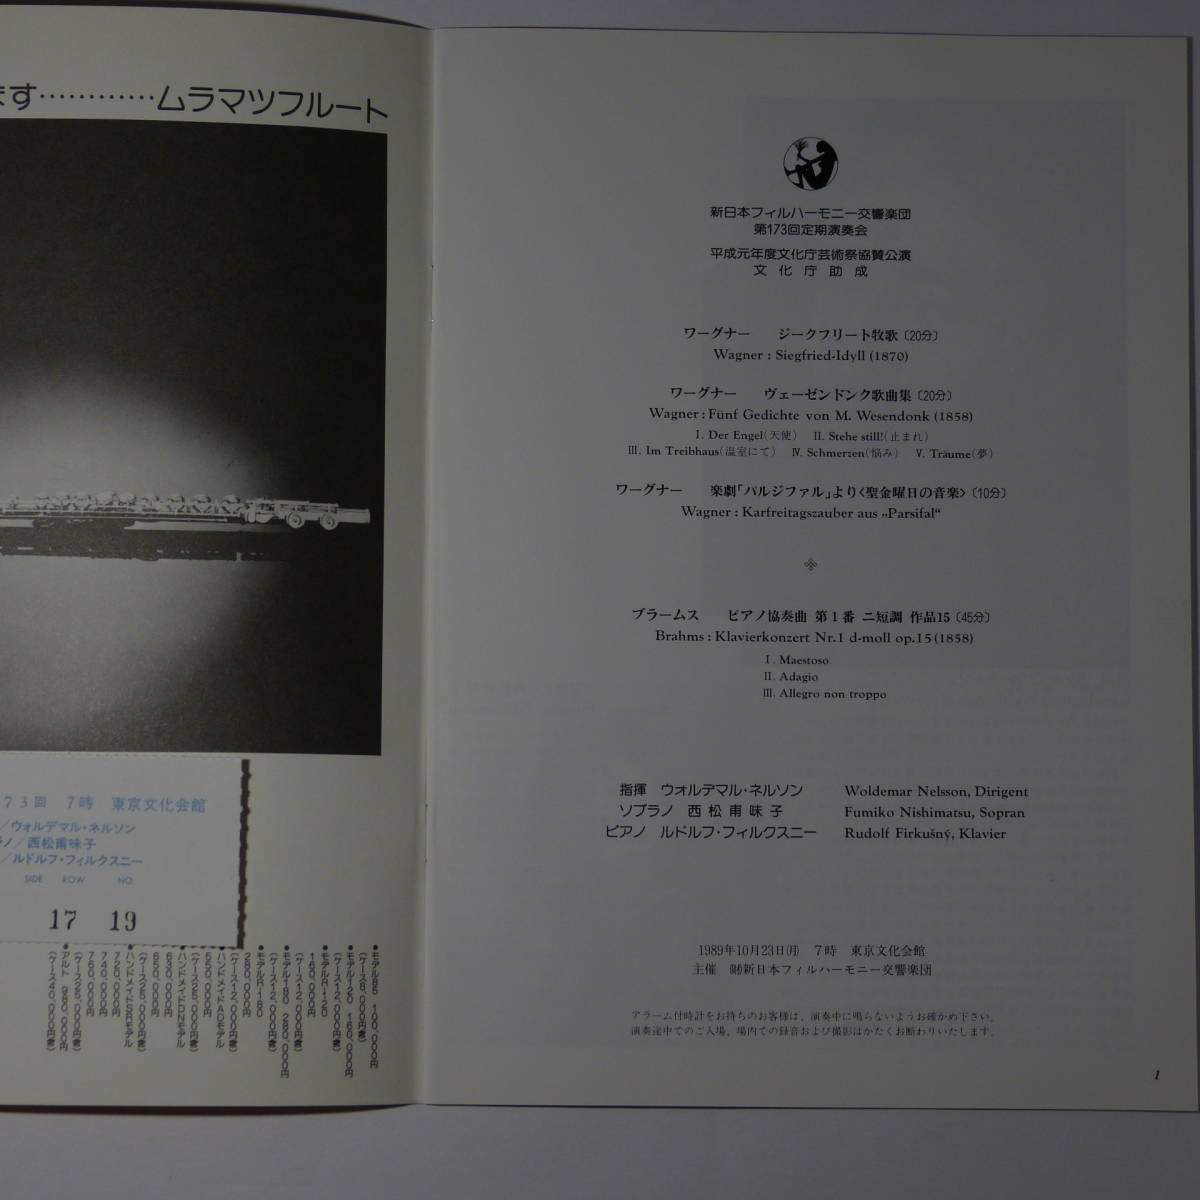 プログラム　新日本フィルハーモニー交響楽団第173回定期演奏会　1989年10月23日　ウォルデマル・ネルソン指揮　フィルクスニー：ピアノ_画像2